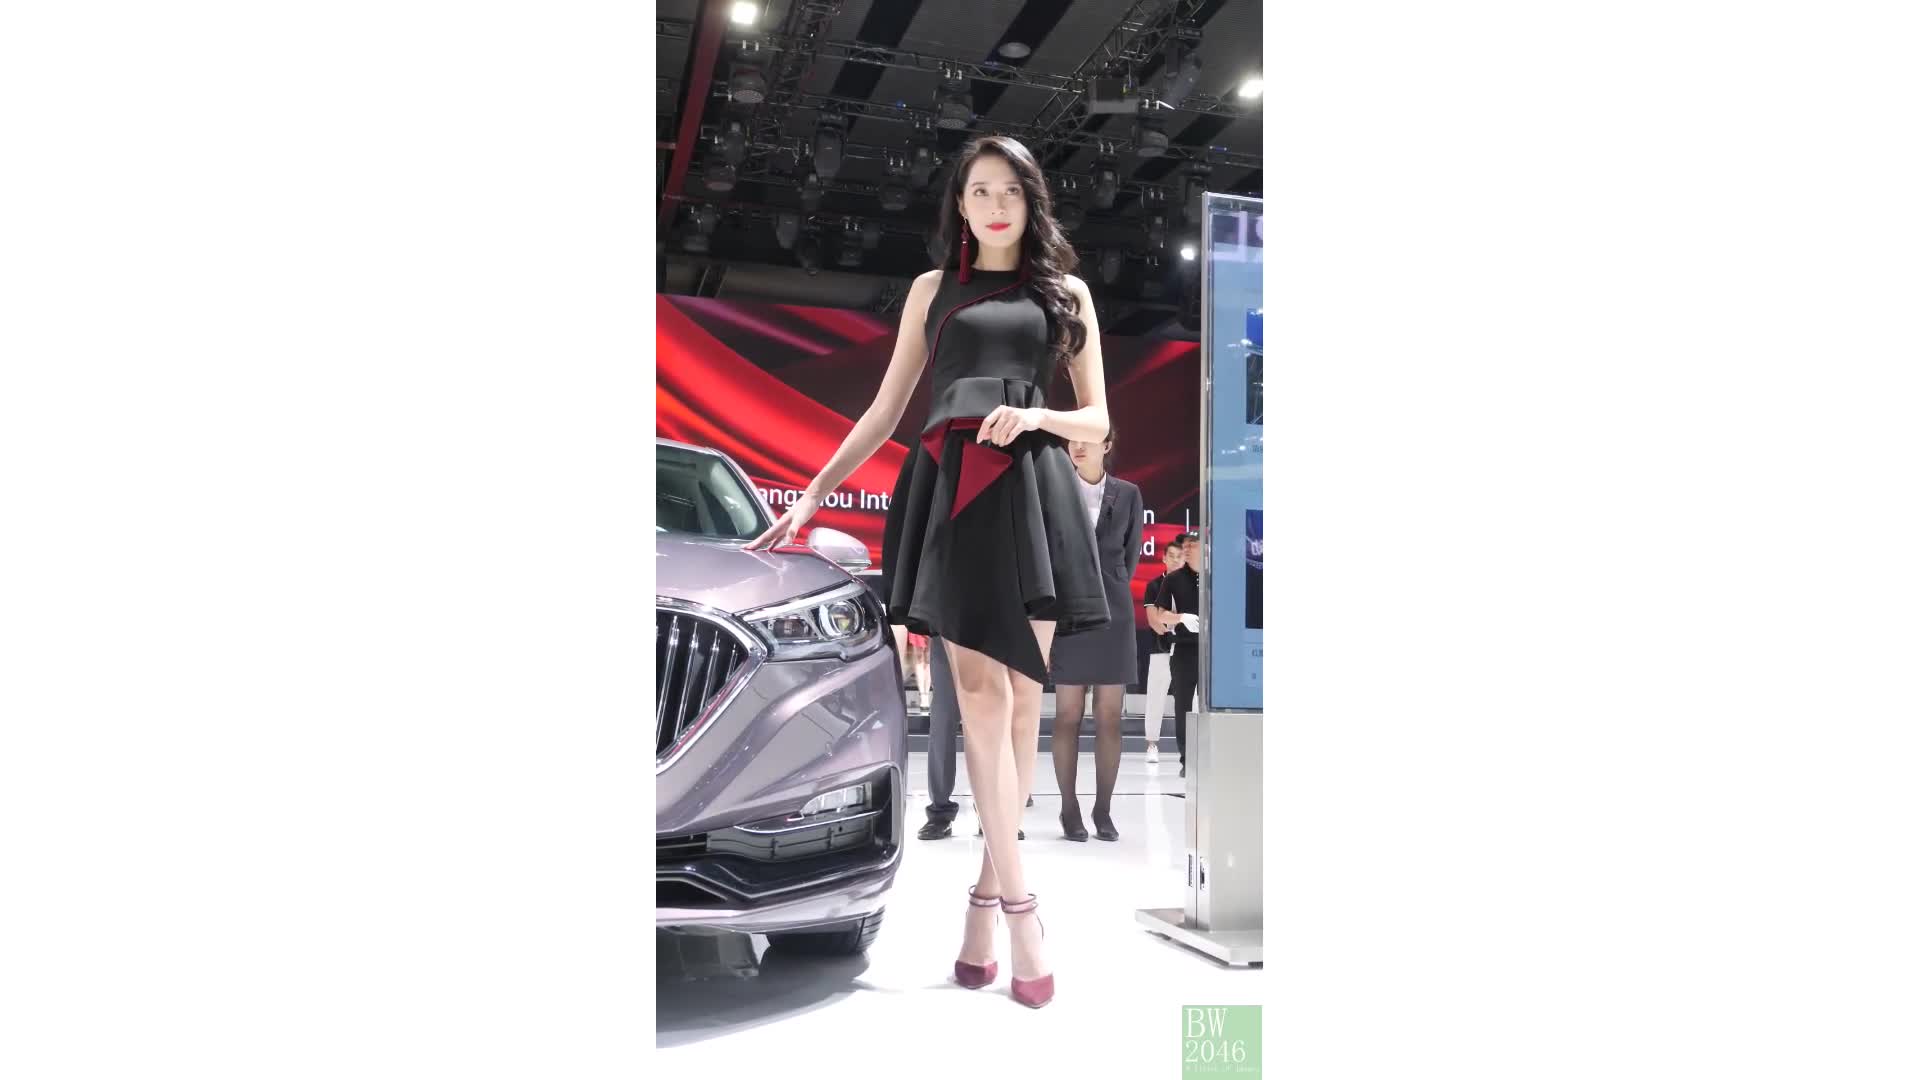 廣州汽車展  Auto Guangzhou 2019 - 車展女模 09 @ 中国一汽 紅旗轎車 (Desktop Version)